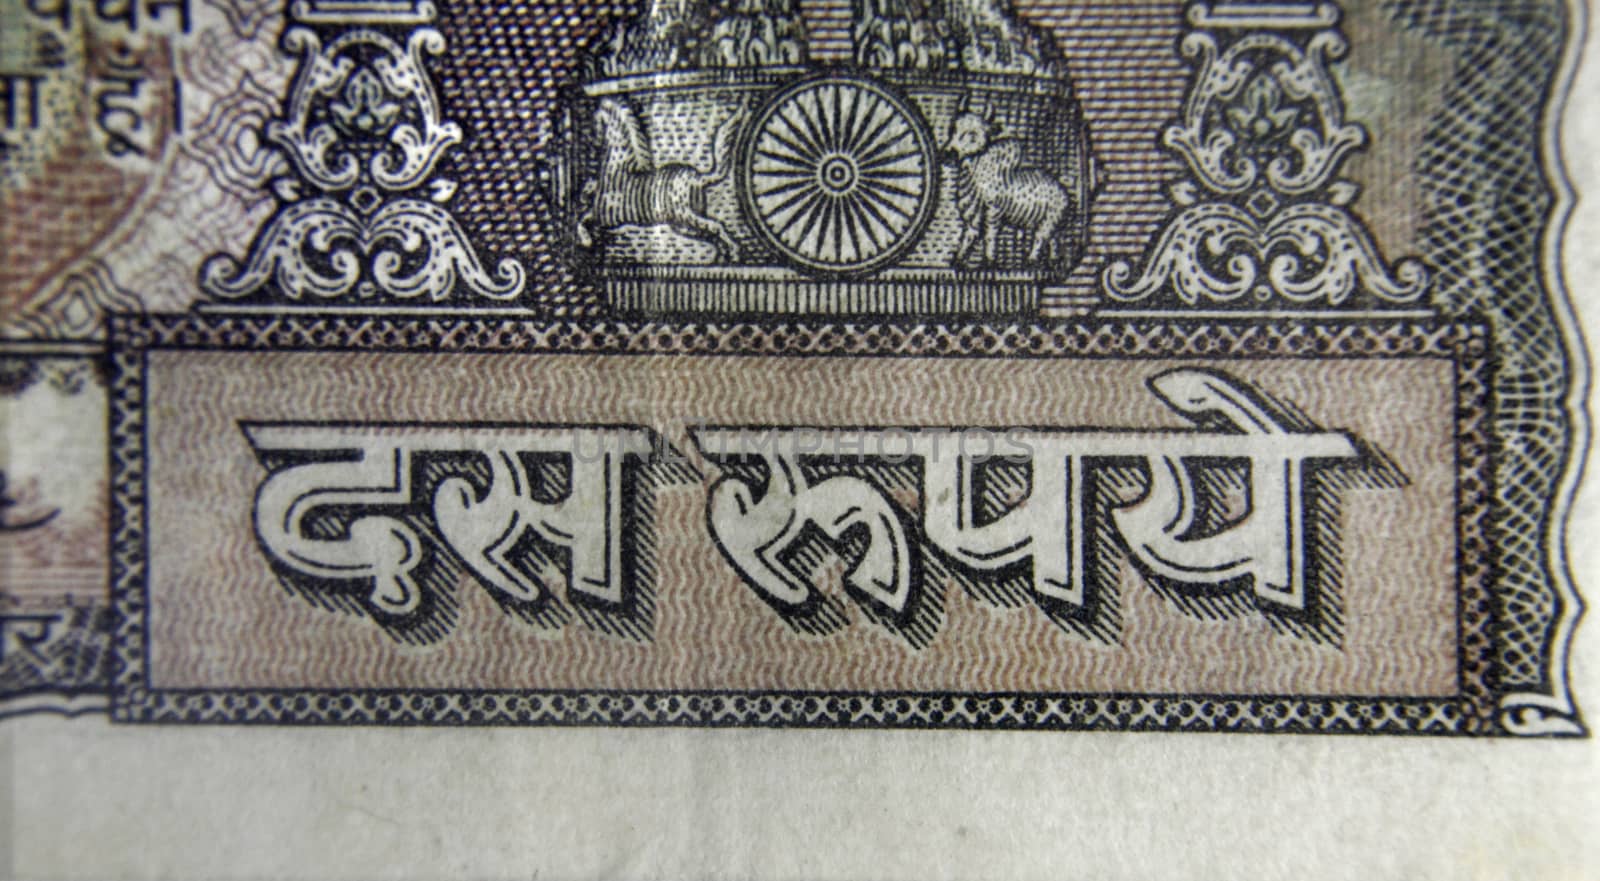 Ten rupee banknote Back Side by yands